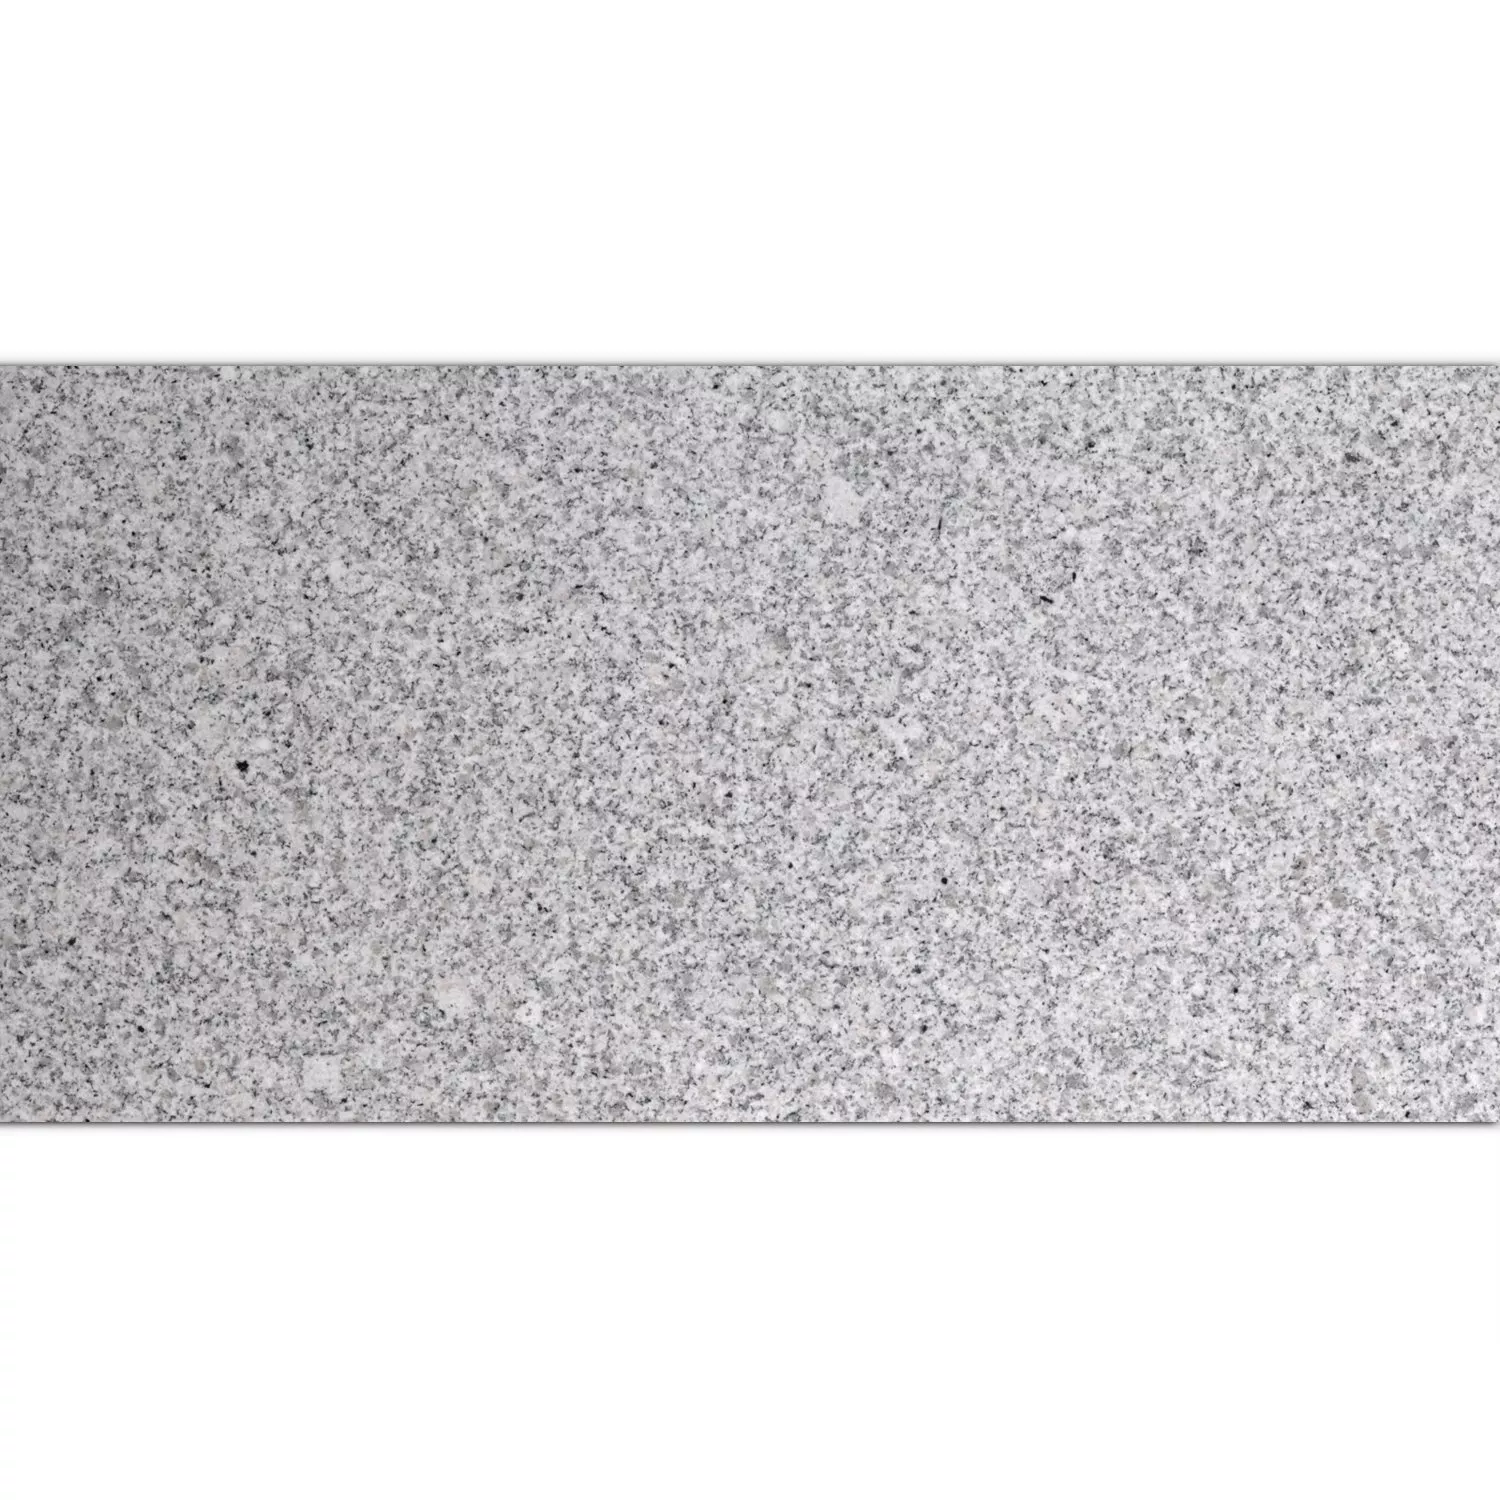 Πλακάκια Aπό Φυσική Πέτρα Γρανίτης China Grey Αμεμπτος 30,5x61cm